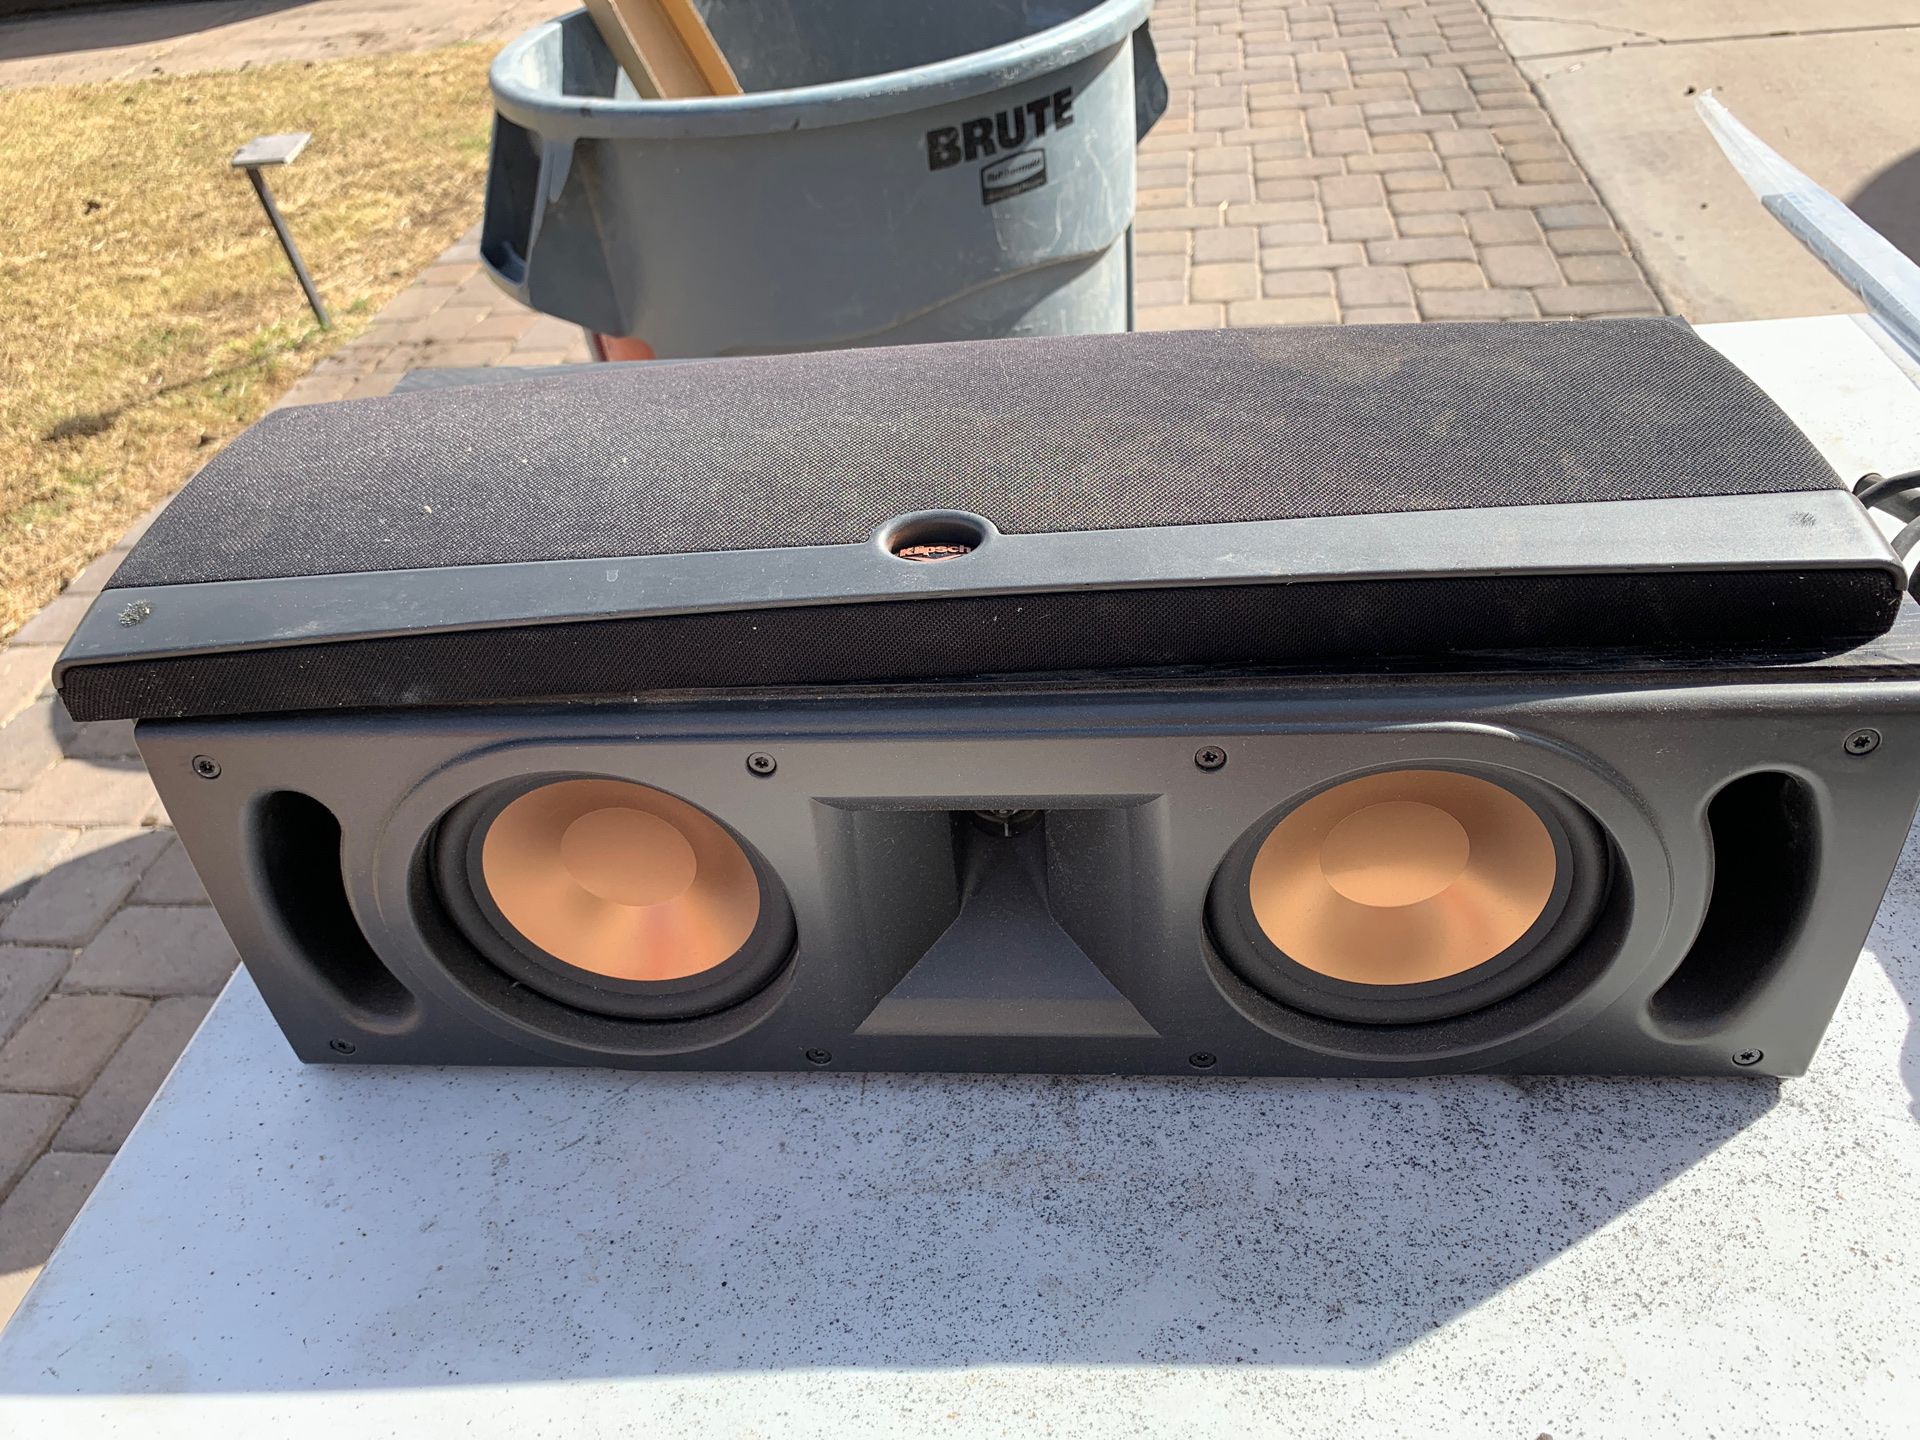 Klipsch Center surroundsound speaker great condition works great